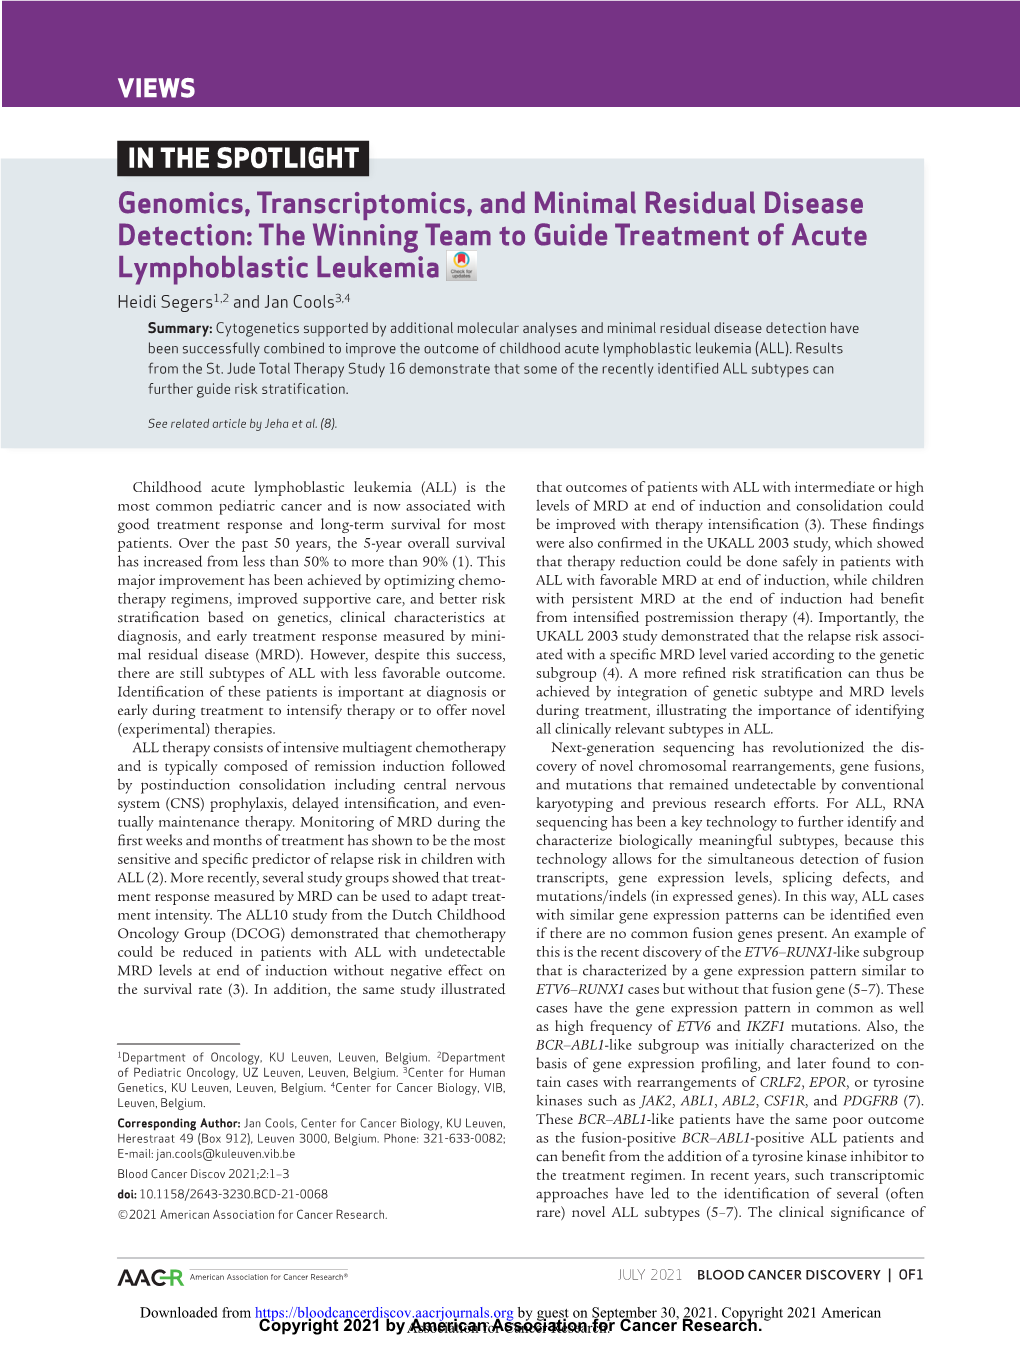 Genomics, Transcriptomics, and Minimal Residual Disease Detection